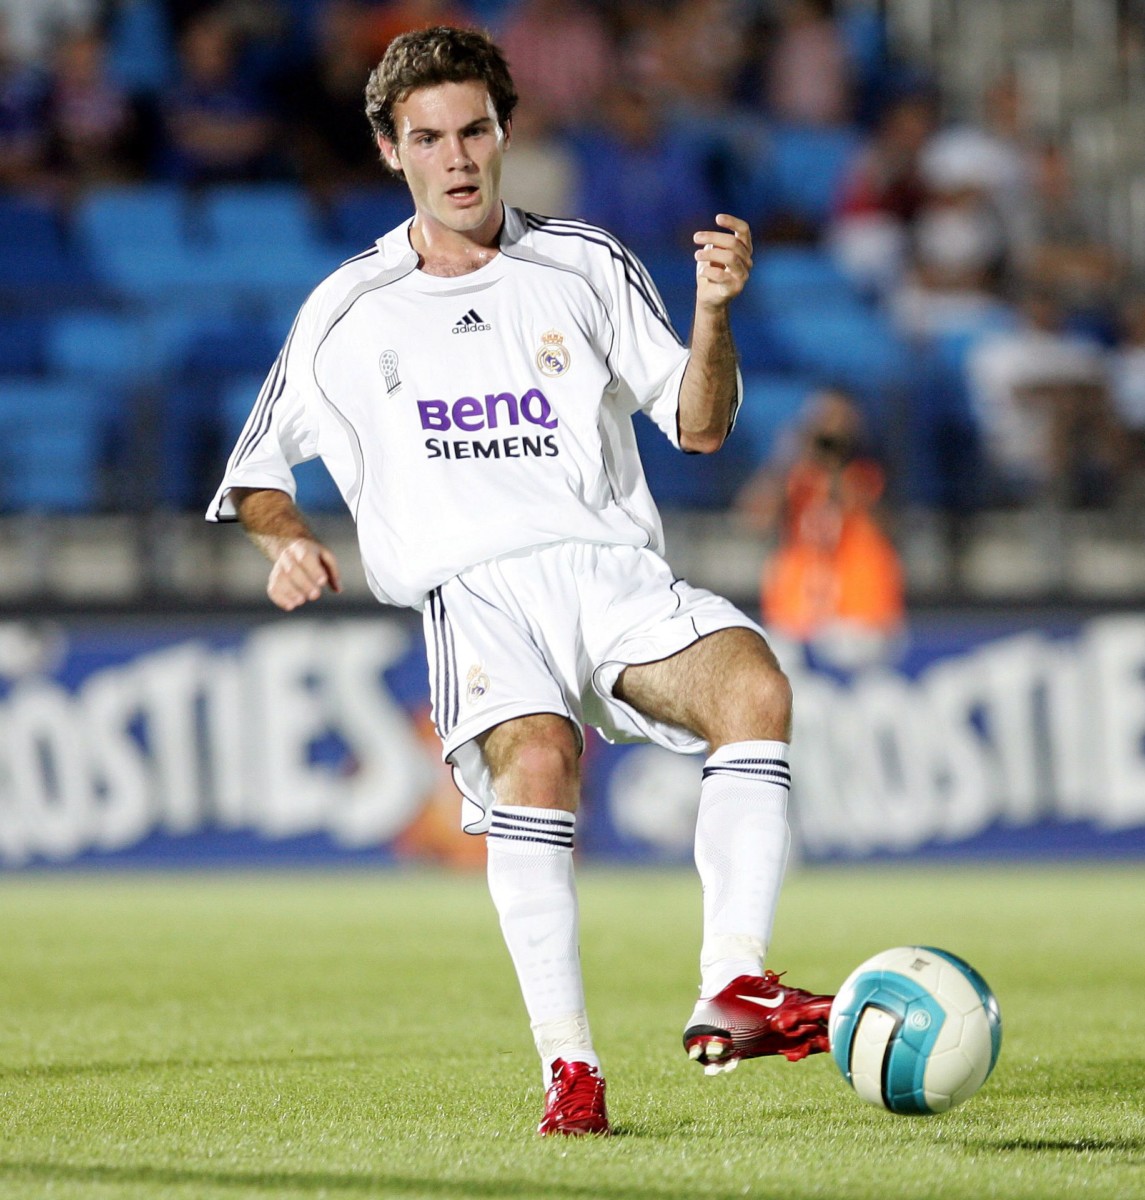 Juan Mata joined Real Madrid aged 15